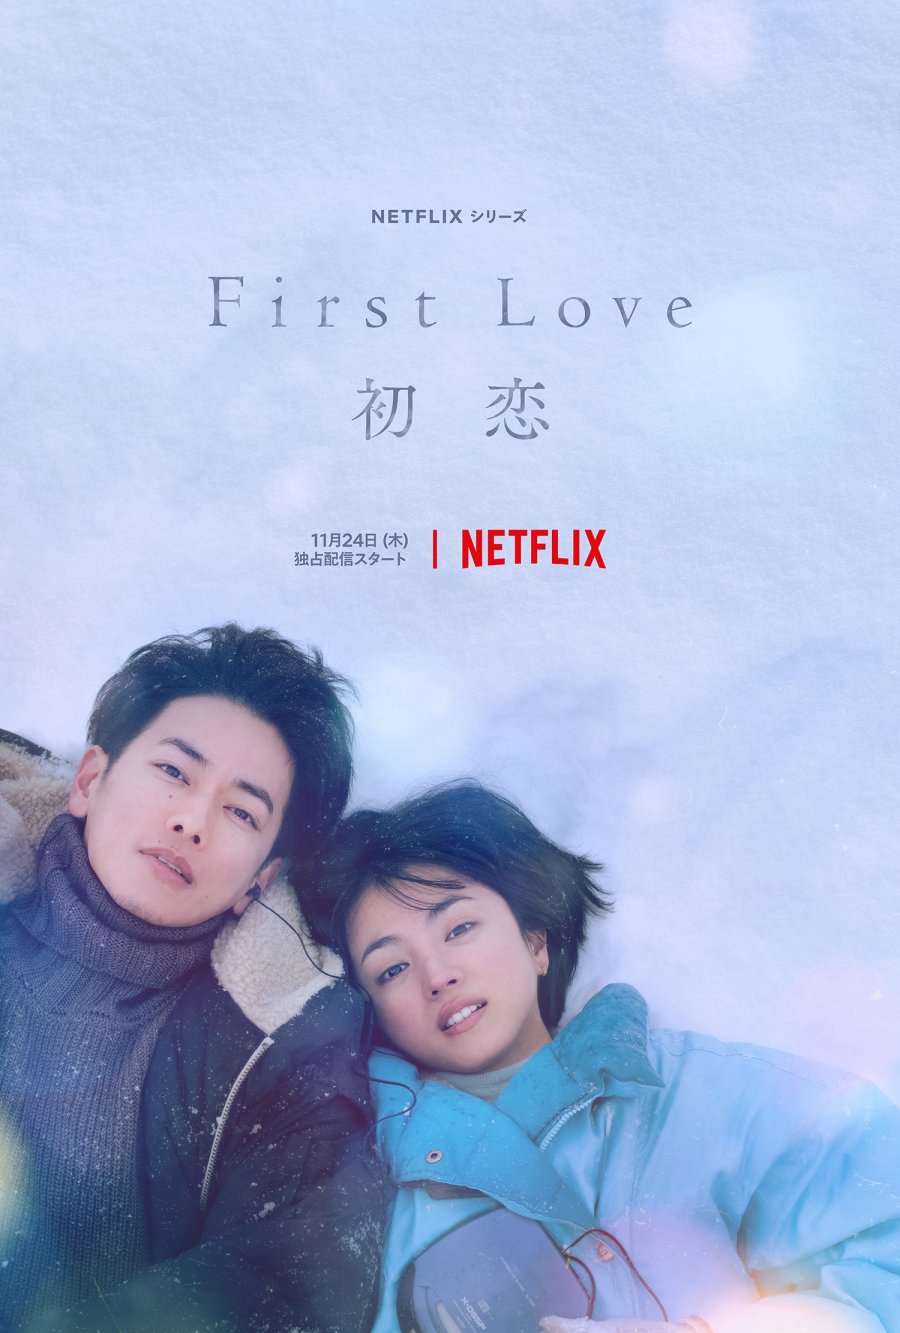 Xem phim tình cảm Nhật Bản hay trên Netflix: Mối tình đầu - First Love (2022)